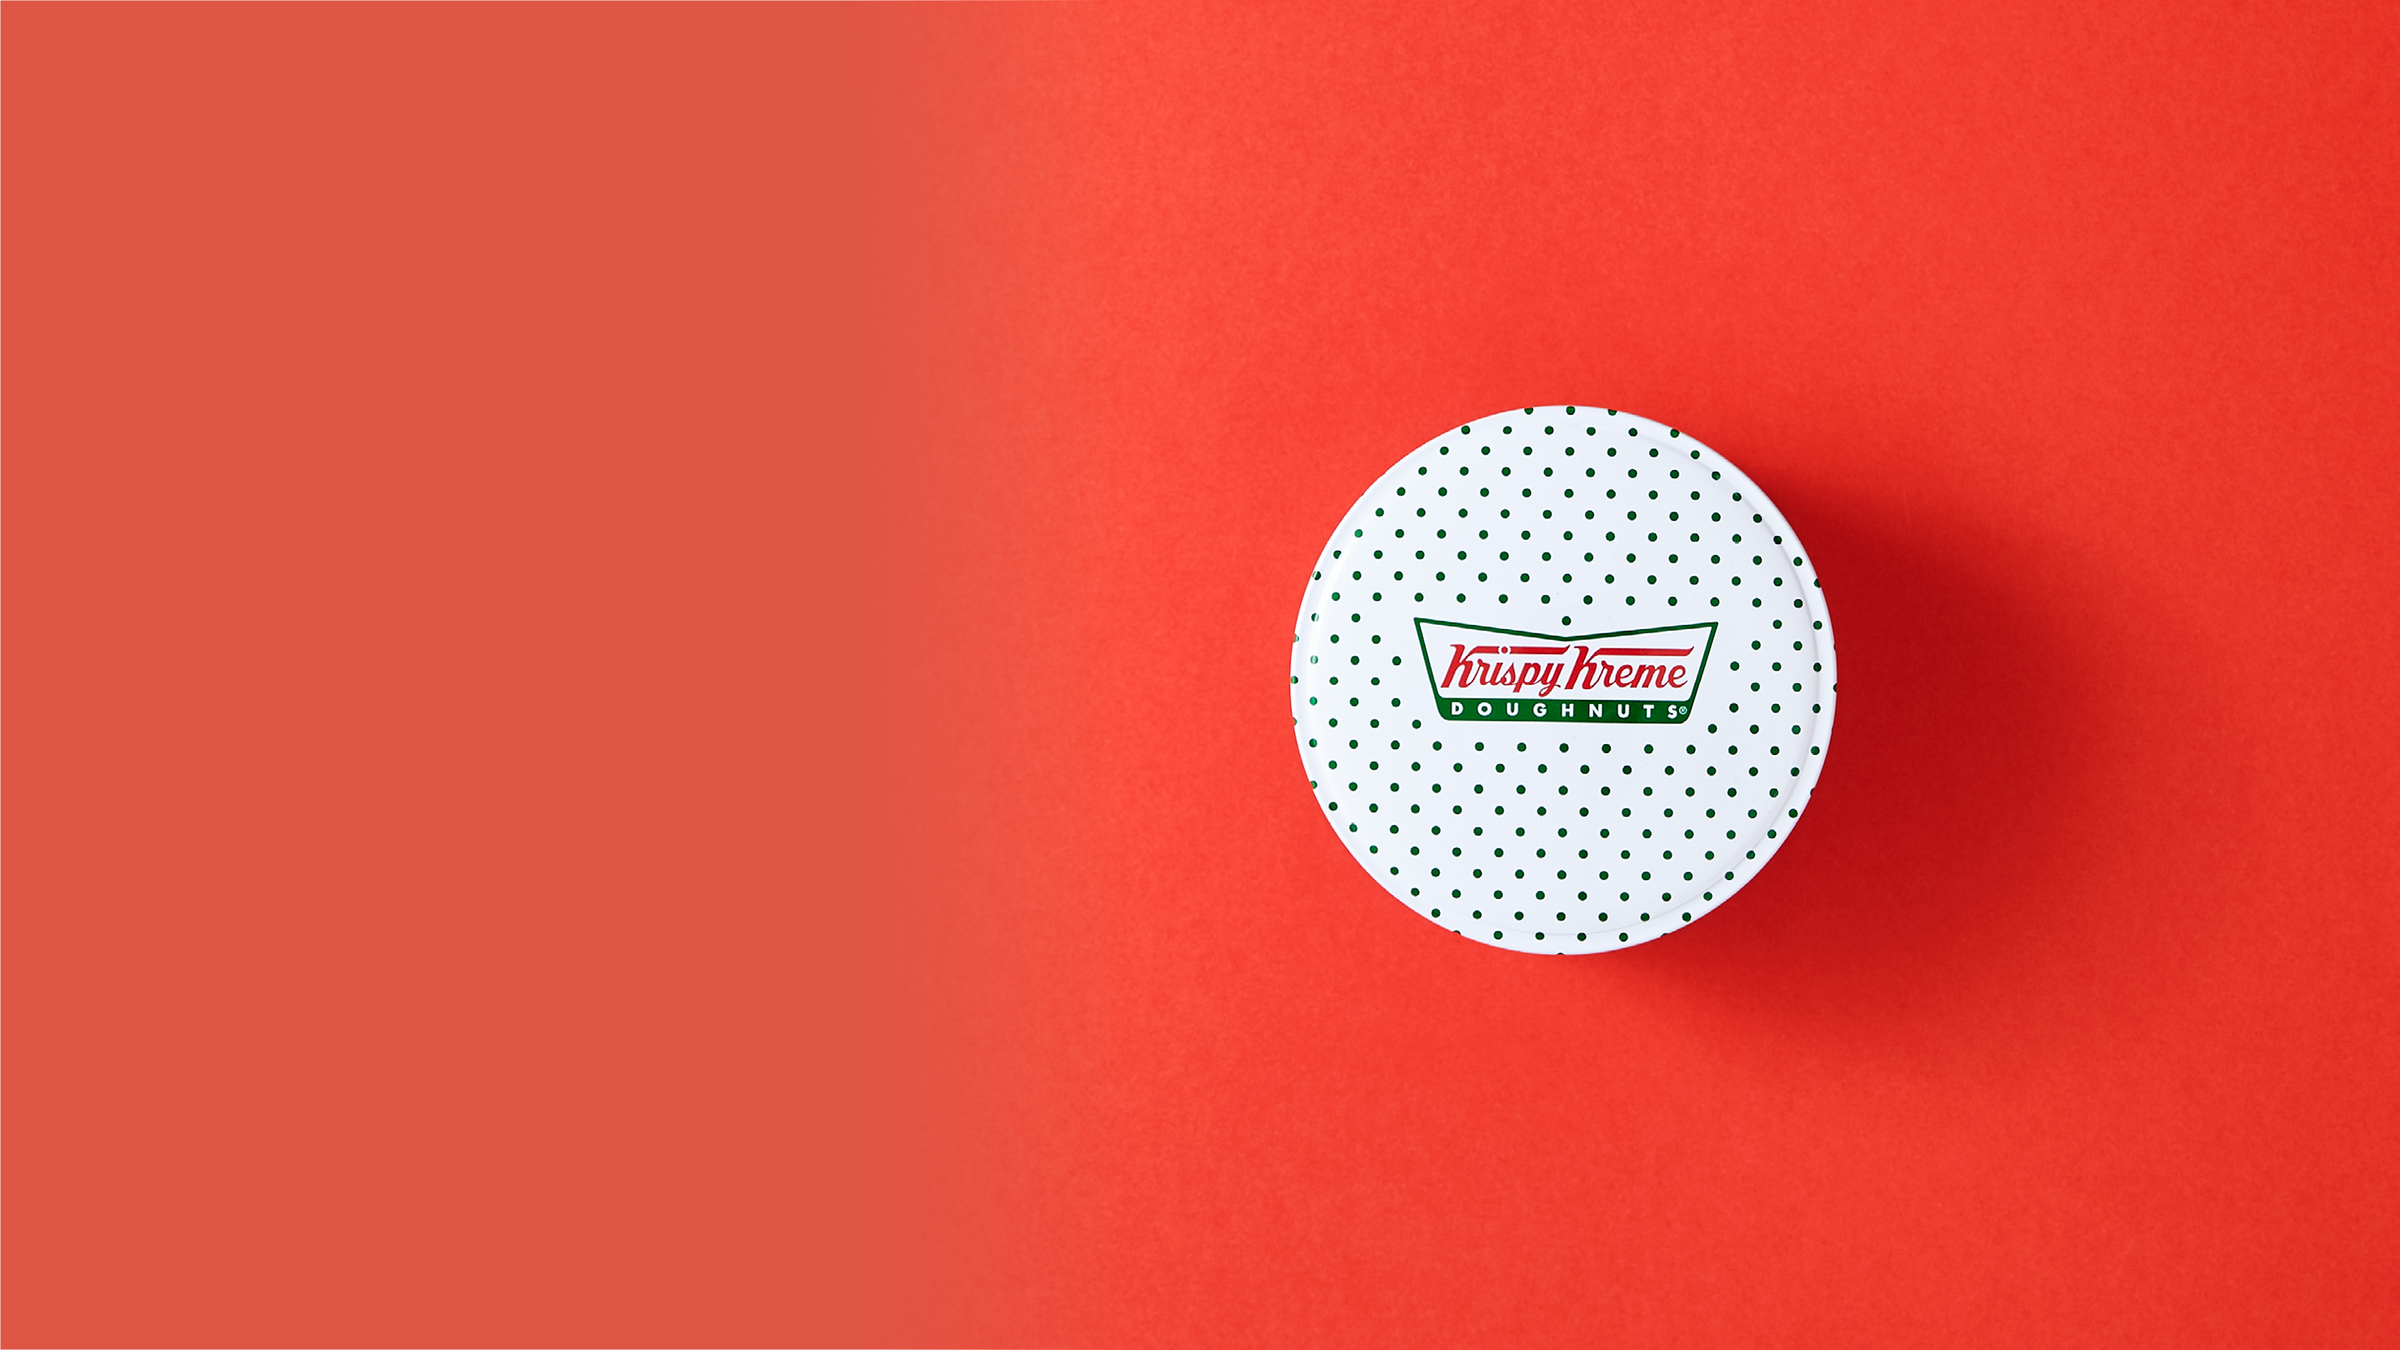 Een verpakking van een Krispy Kreme-donutblik tegen een rode achtergrond.